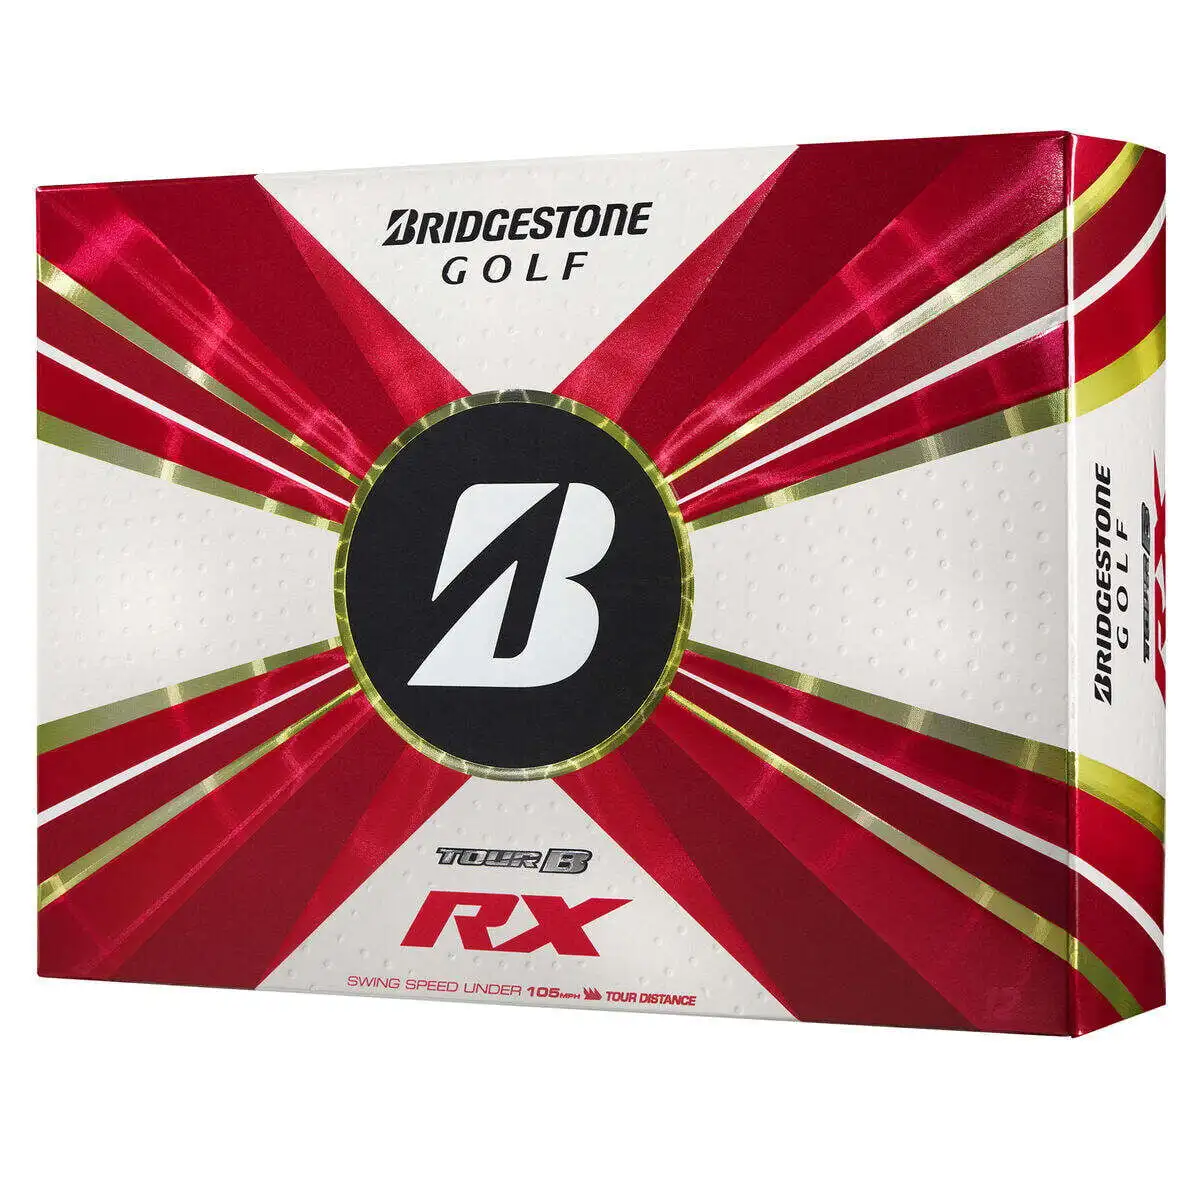 

Мячи для гольфа Bridgestone Tour B RX 2022, 12 шт. в упаковке, белые